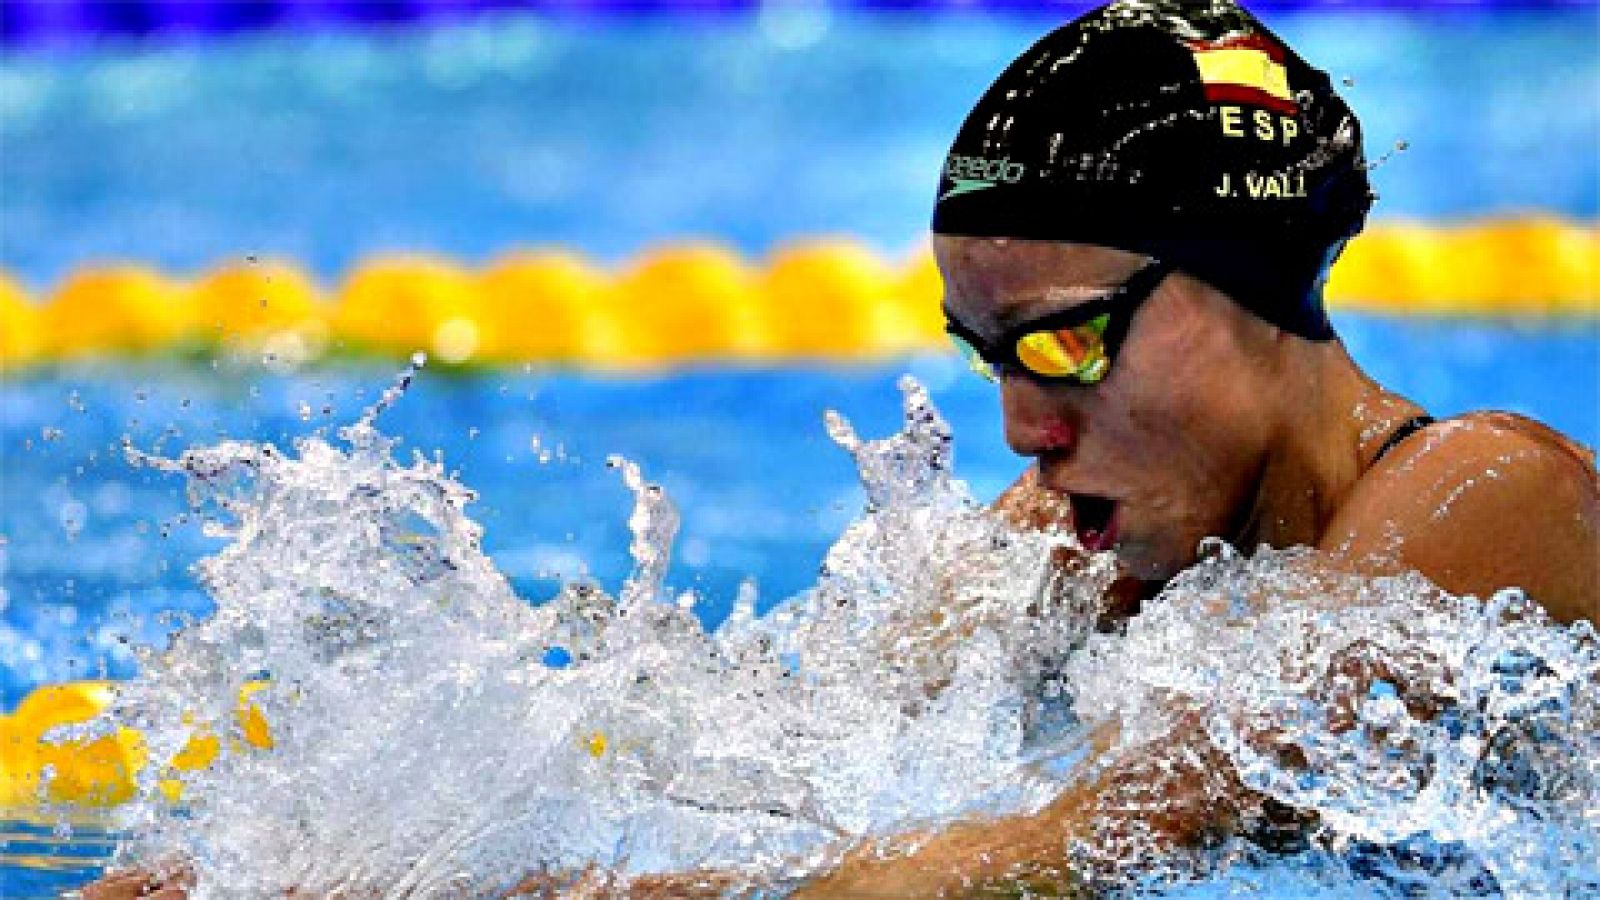 Natación Europeos de piscina corta Jessica Vall se cuelga el bronce en los 100 braza